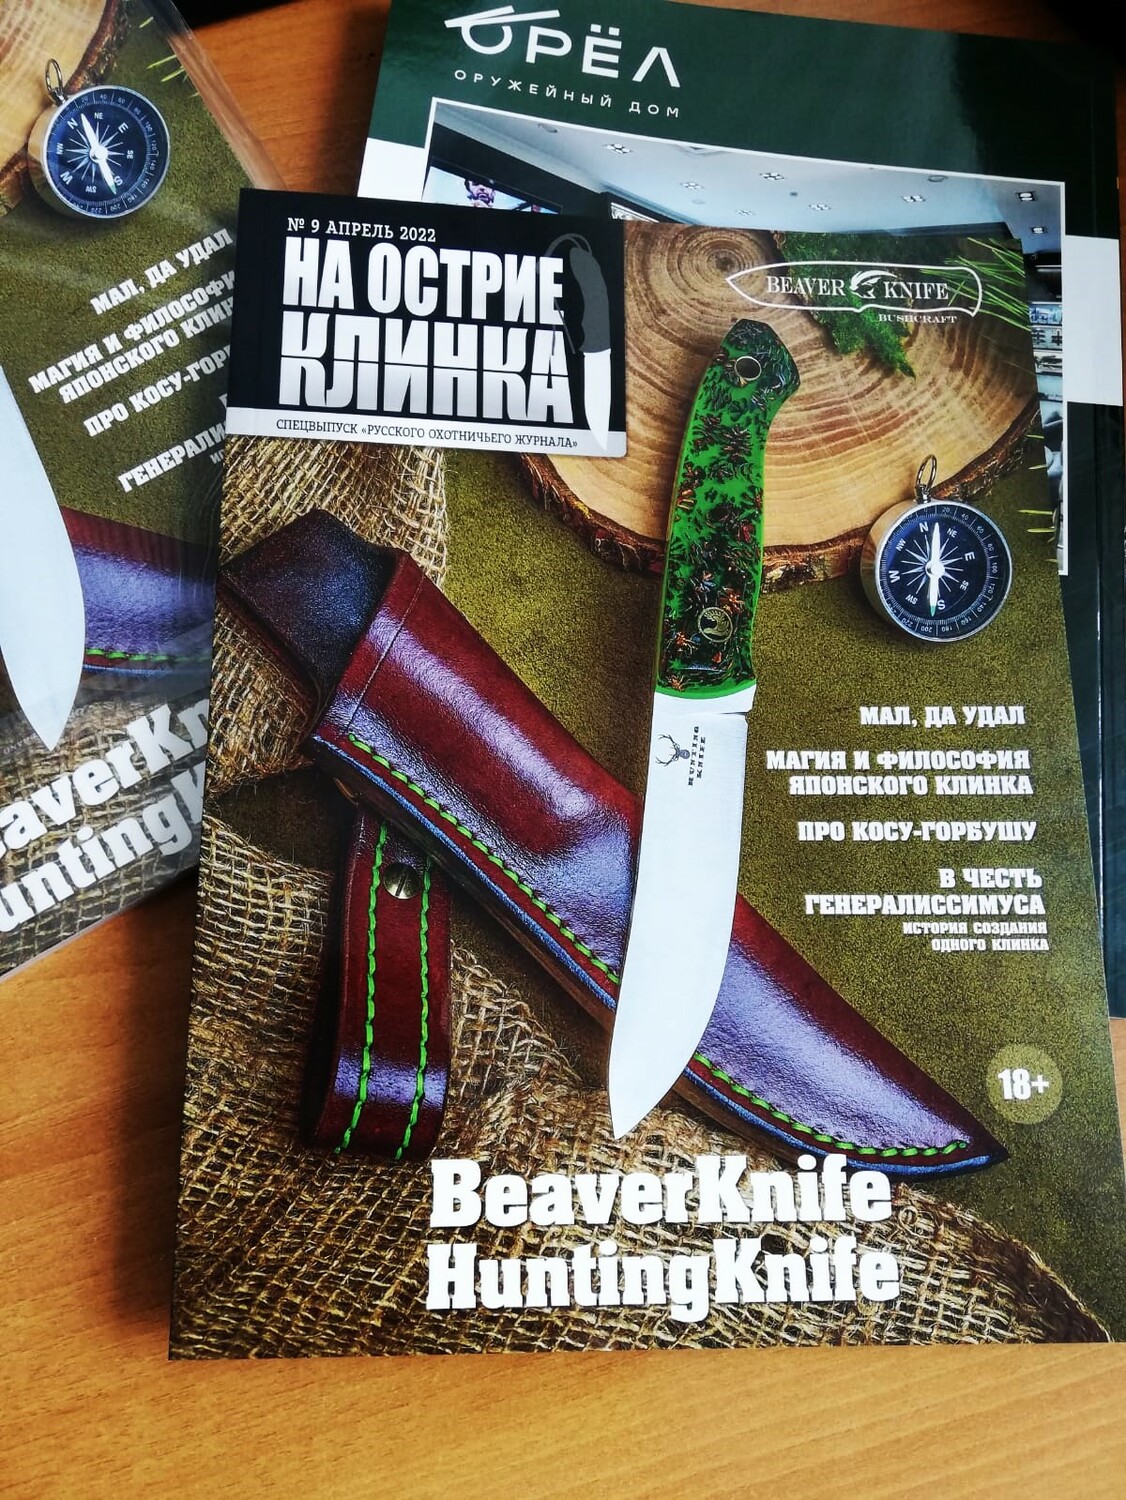 BeaverKnife 'Hunting Knife' #5005 - Юбилейный нож в честь 5000 выпущенных ножей мастерской. Нож был размещен на обложке Русского Охотничьего Журнала №9 за 2022 год. В подарок к ножу выпуск журнала со статьей и автографом мастера